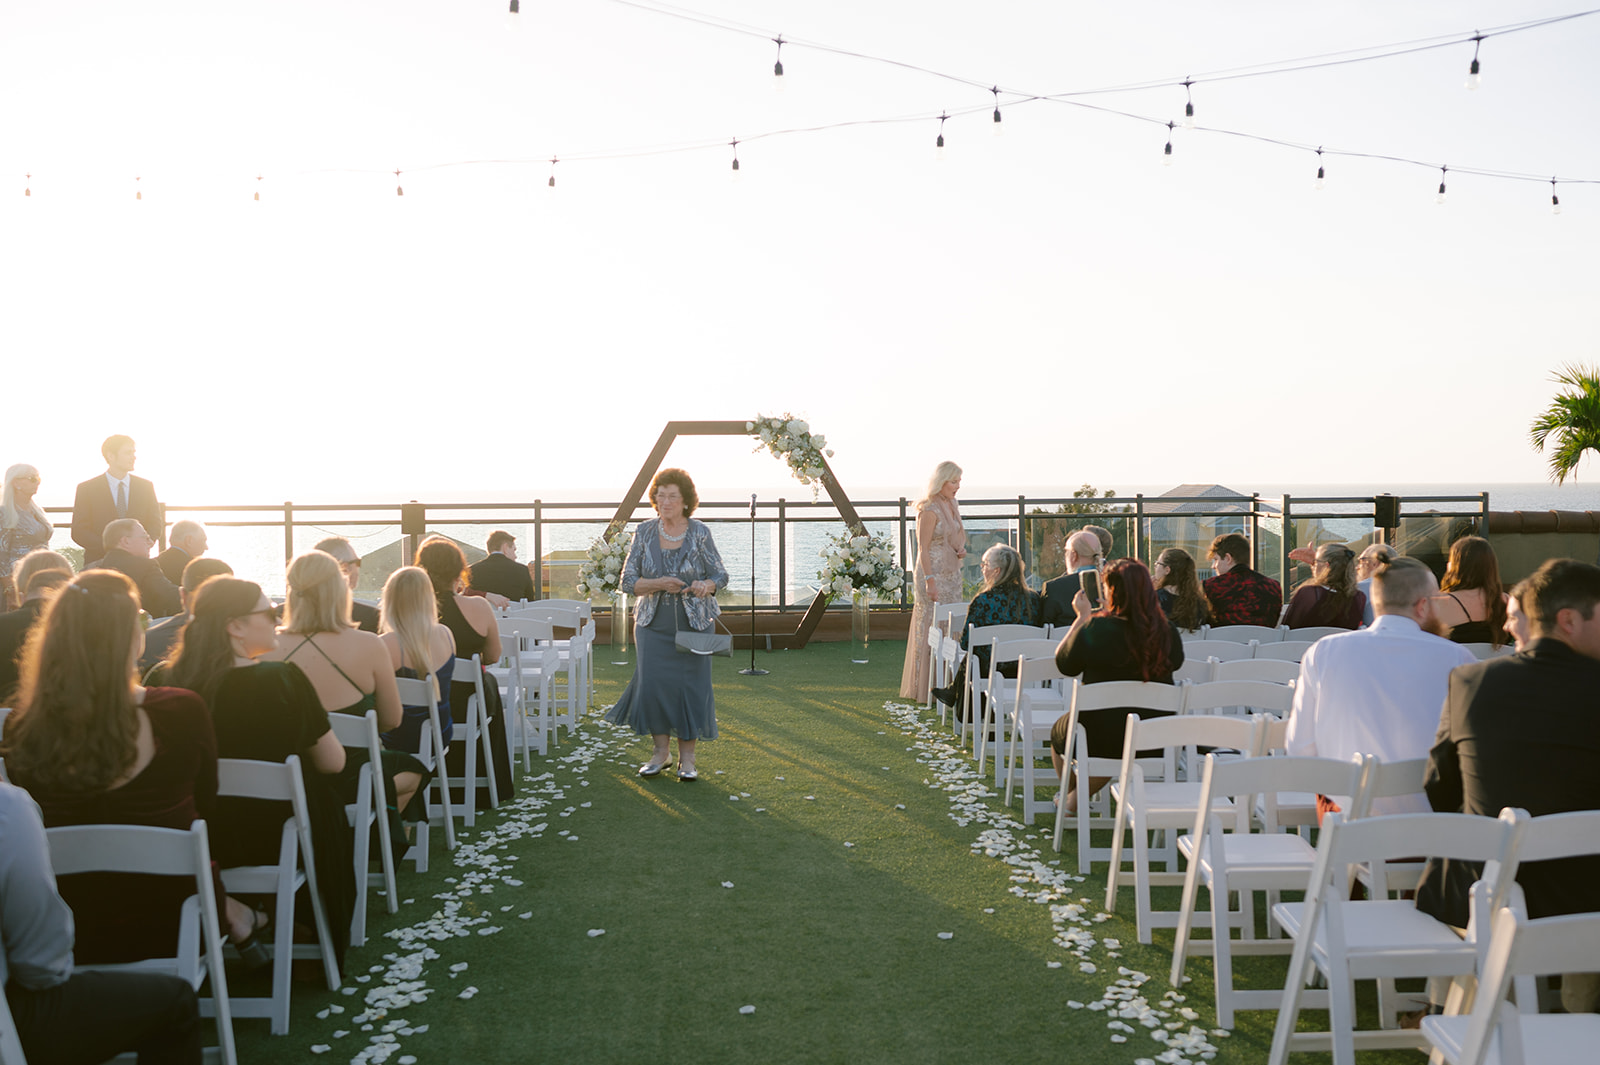 Hotel Zamora Wedding: Fun Beach Wedding Party by Stills by Hernan
